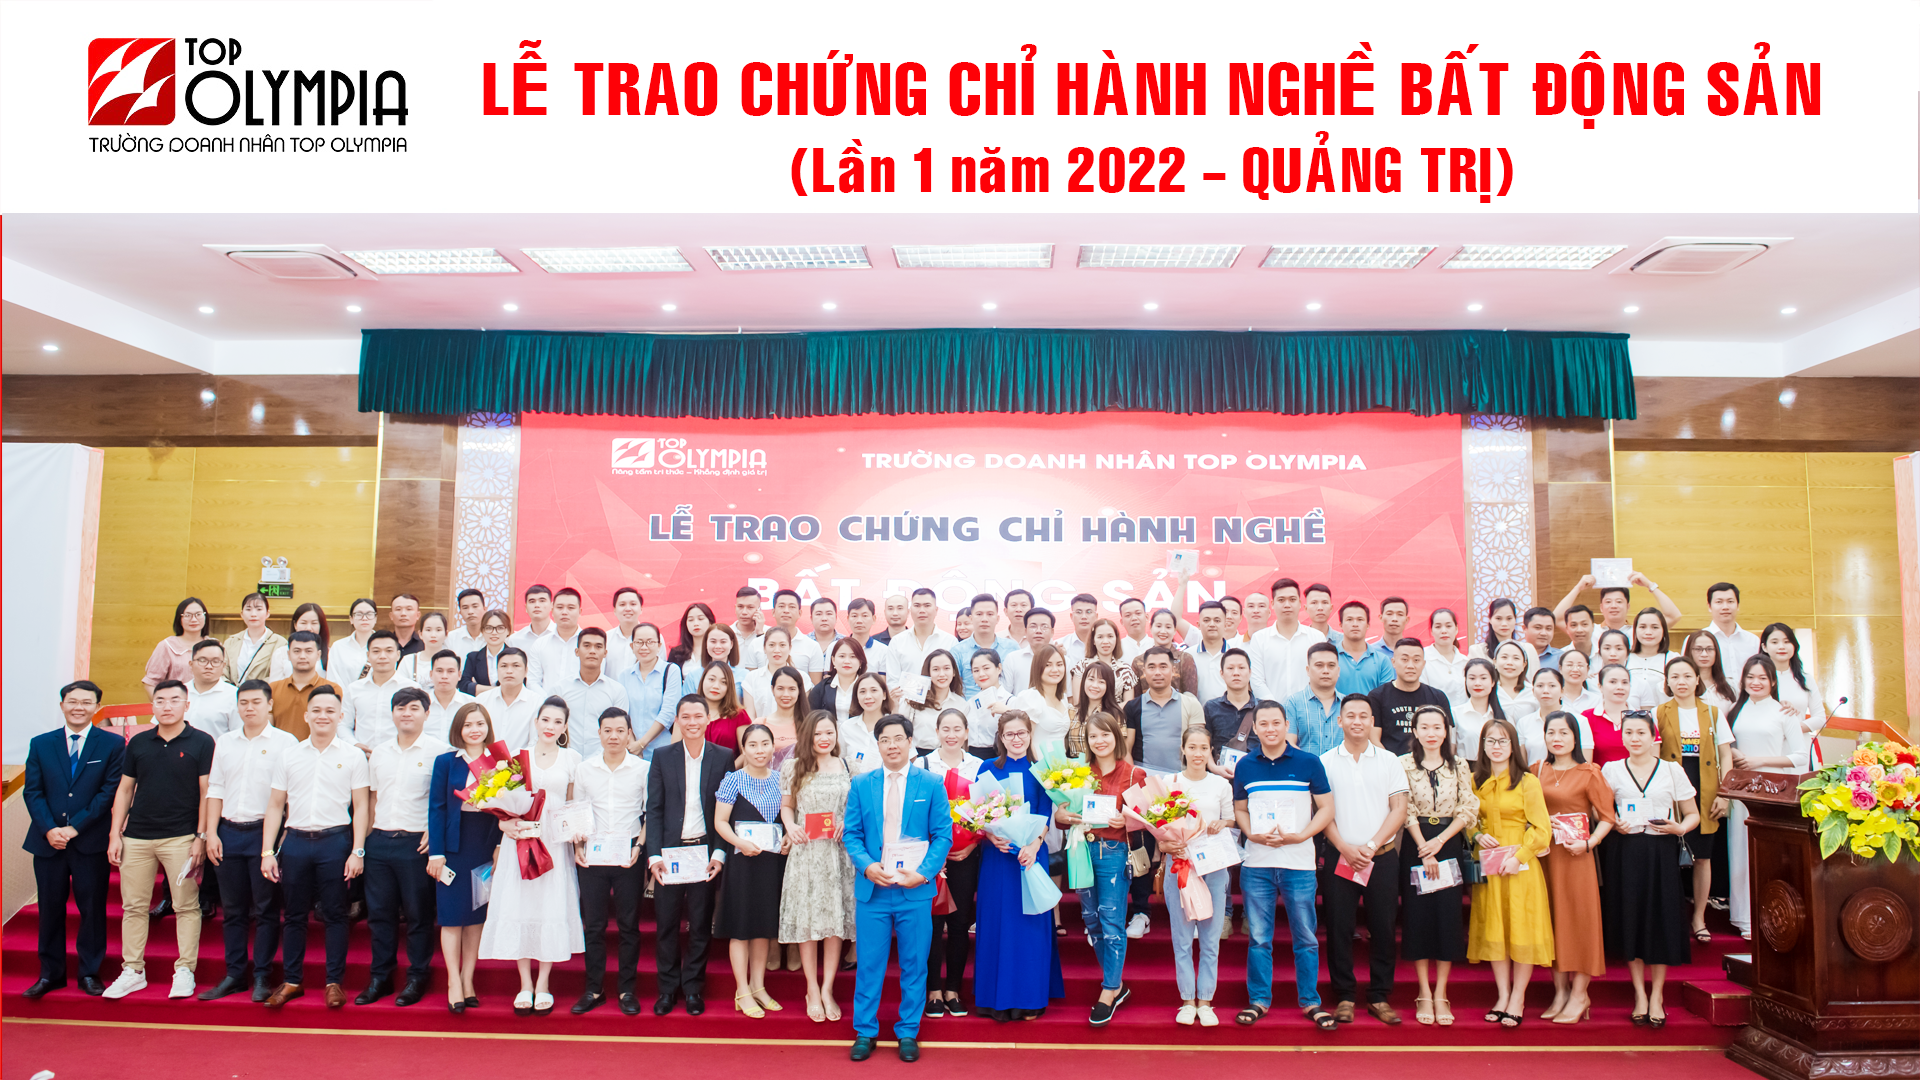 Quang Tri L1.2022